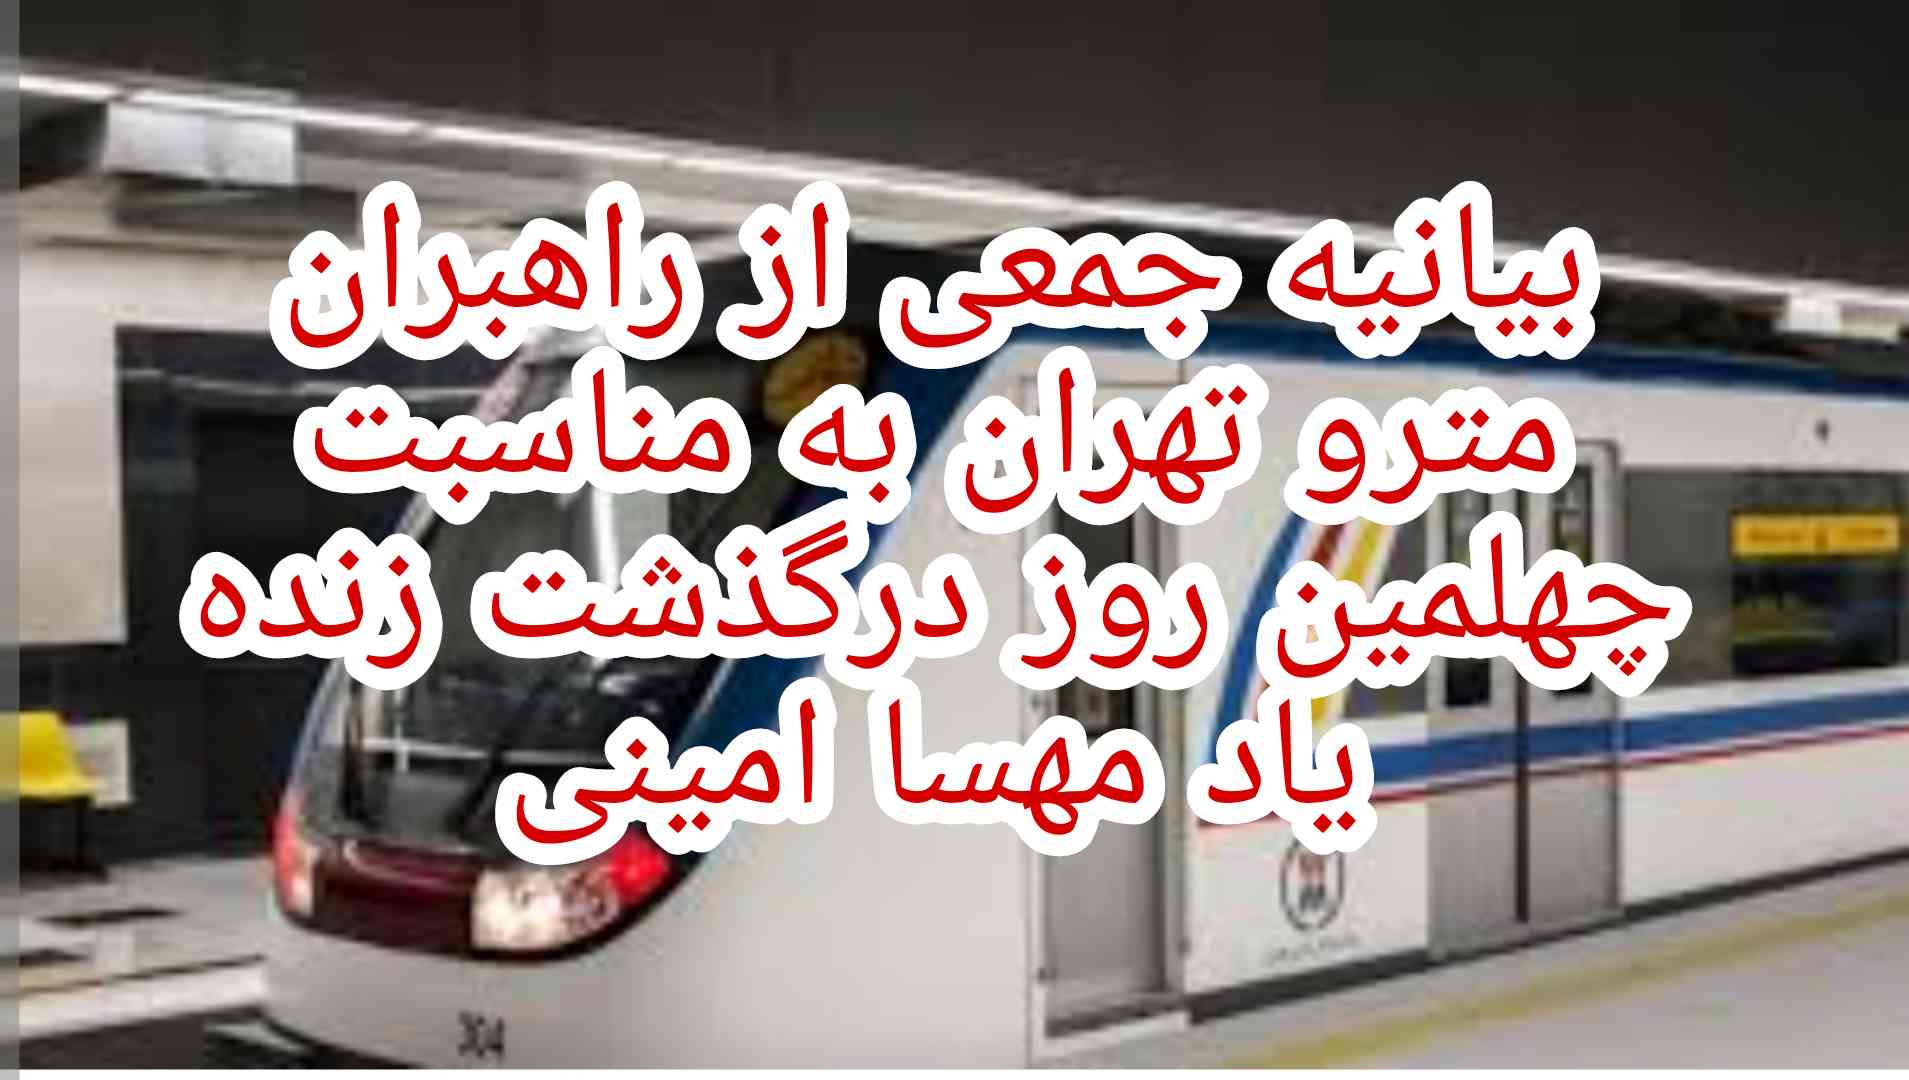 بیانیه جمعی از راهبران مترو تهران به مناسبت چهلمین روز درگذشت زنده یاد مهسا امینی